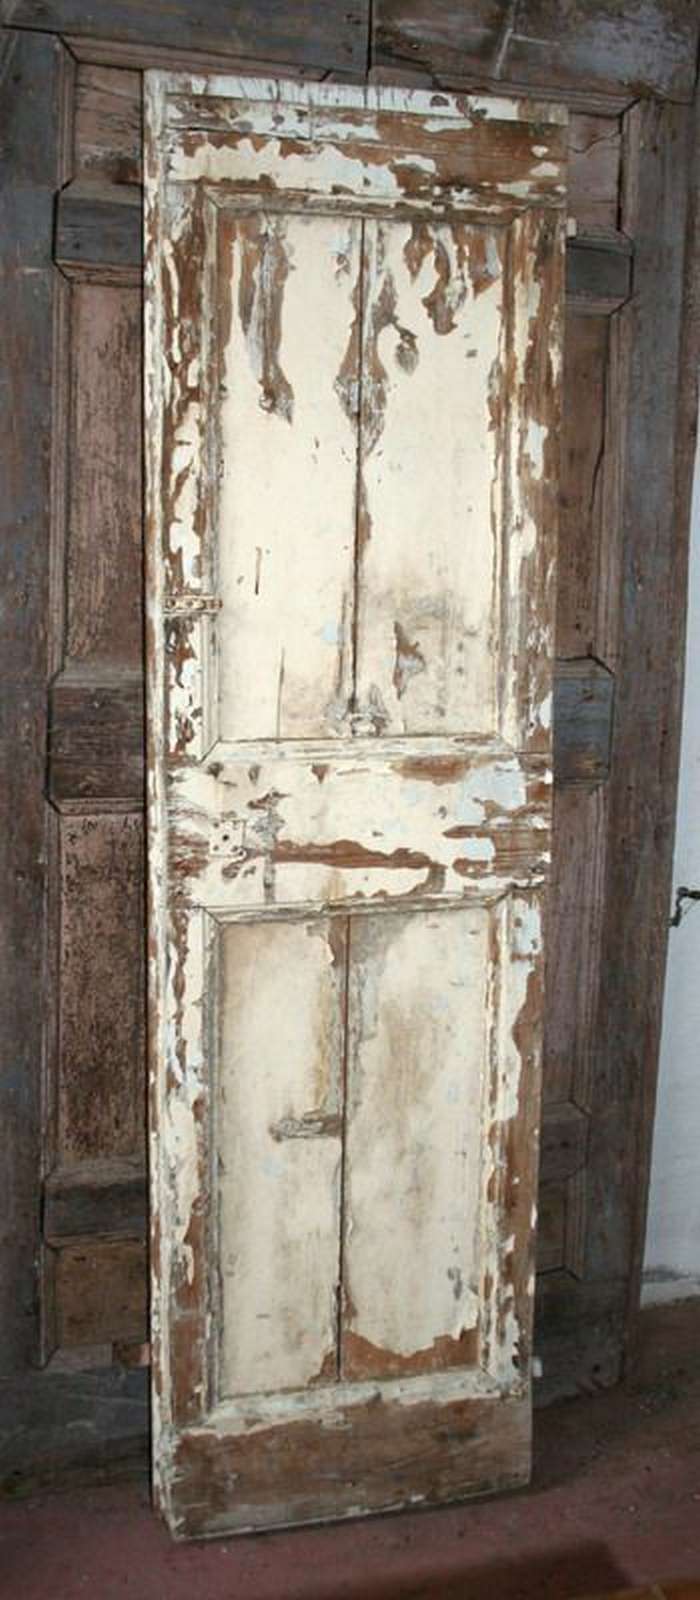 Antica porta in legno - Porte Singole - Porte Antiche - Prodotti - Antichità Fiorillo